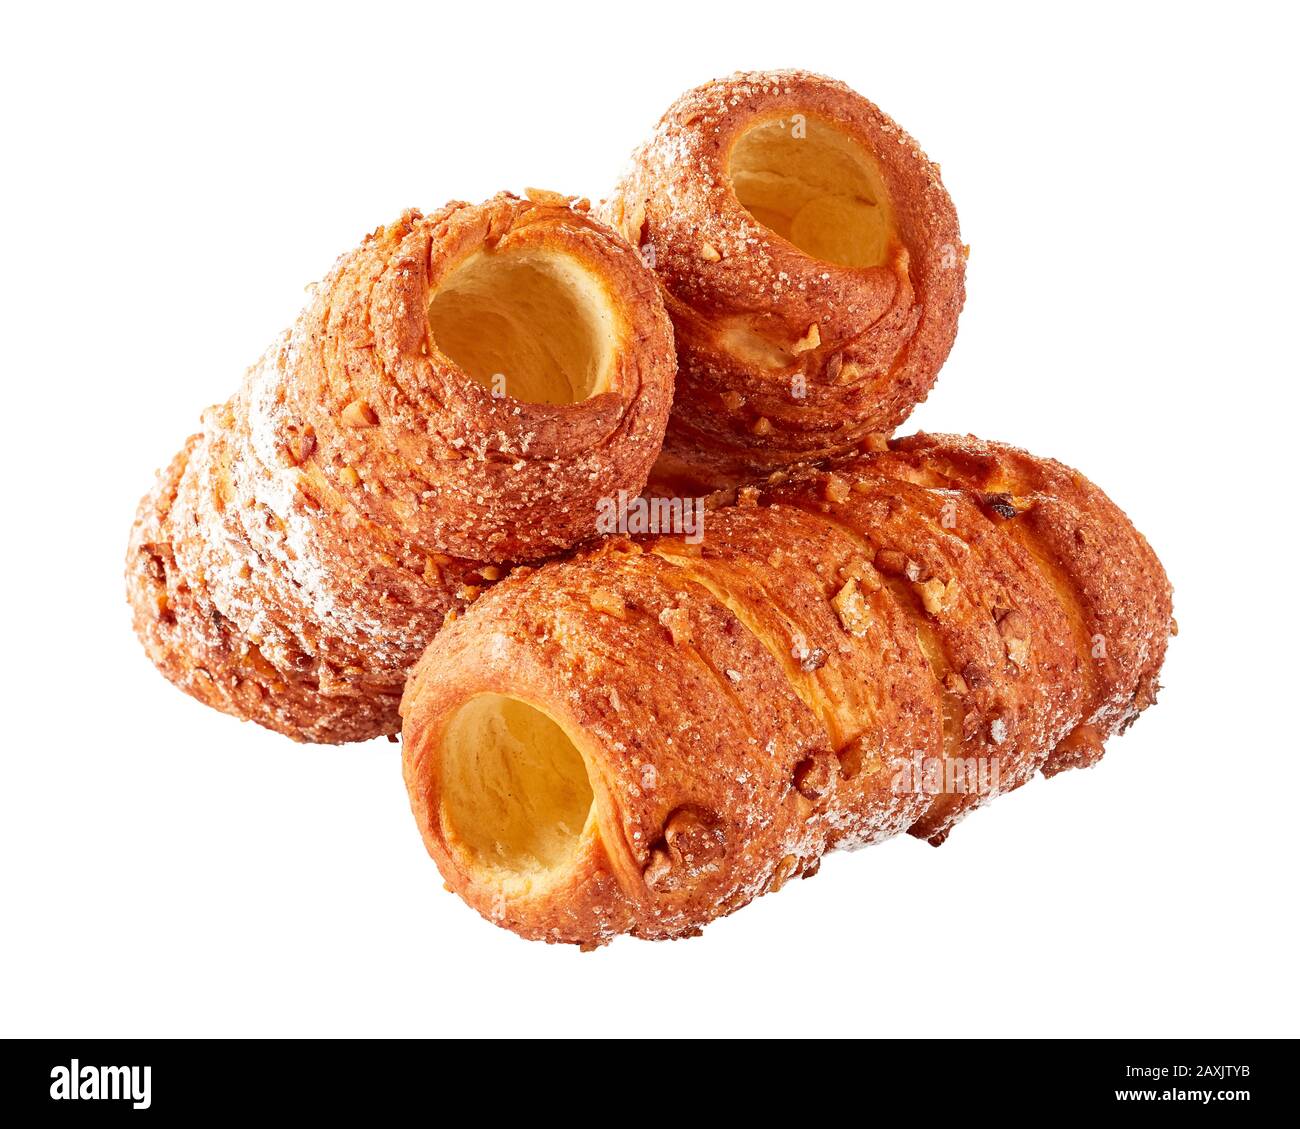 Tre dolci al camino Street food ceco: Pasta arrotolata avvolta intorno ad un bastone cosparso di cannella e noci isolato su bianco, primo piano Foto Stock